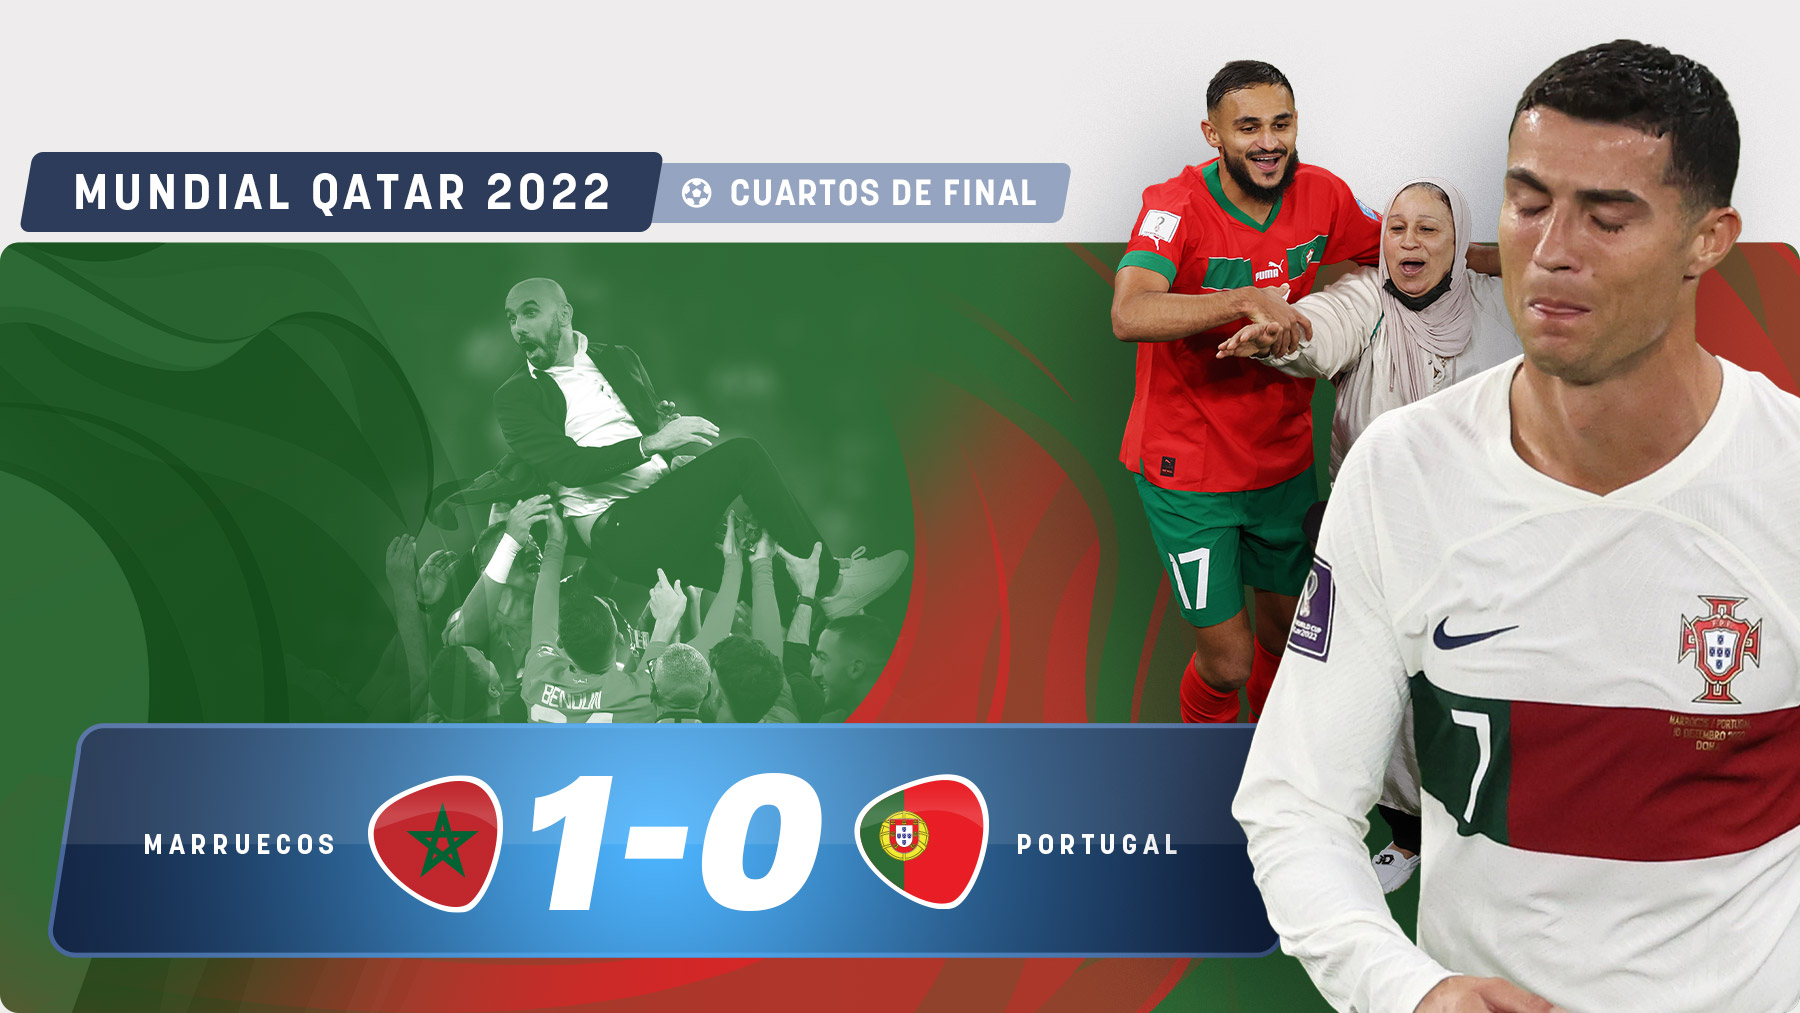 Marruecos – Portugal